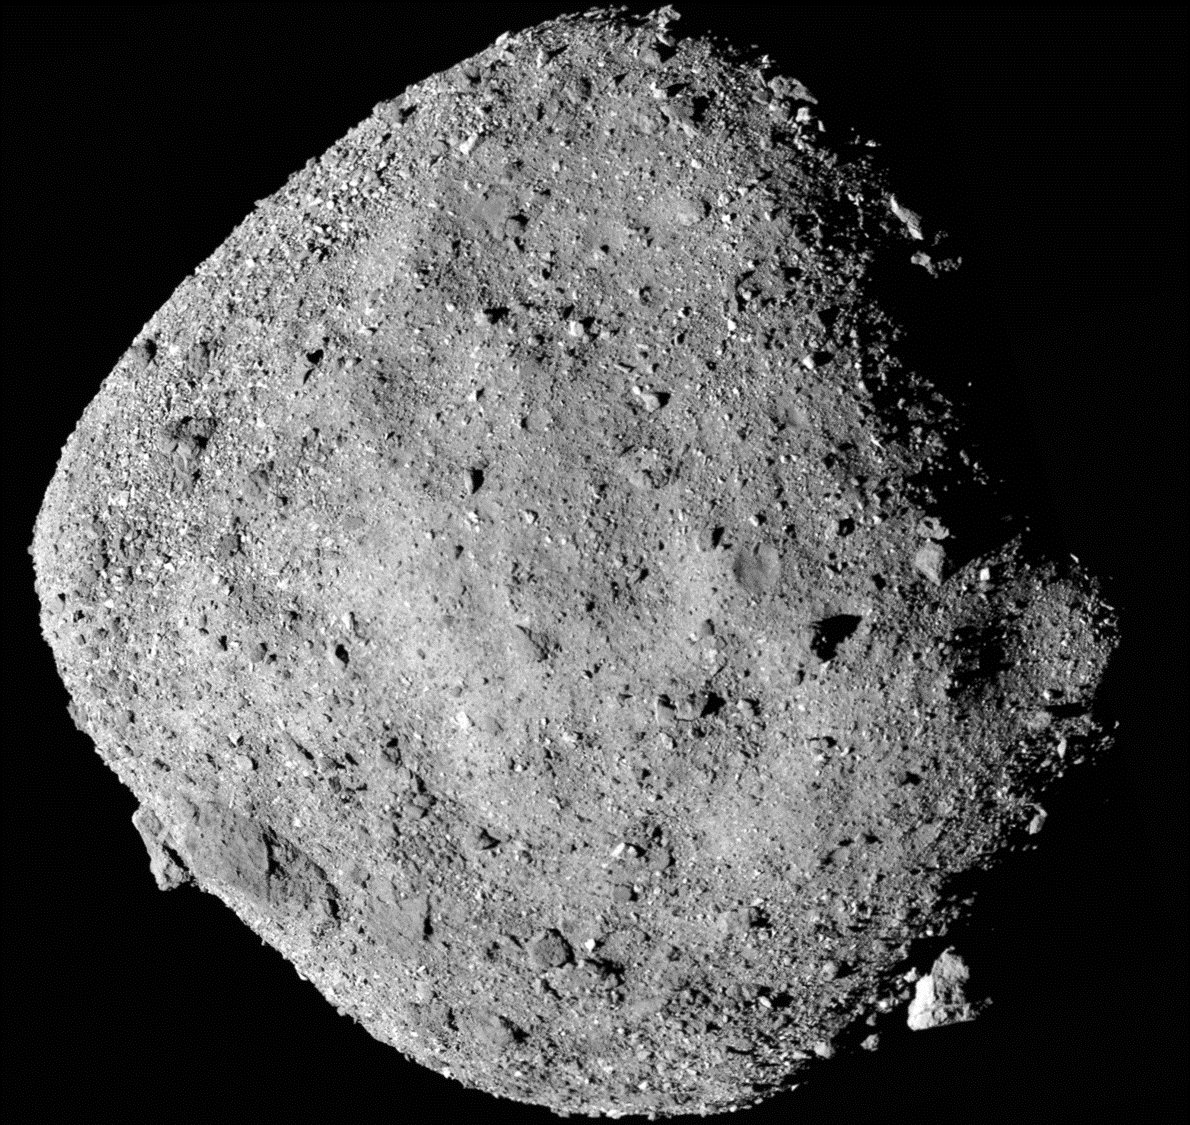 Asteroid Bennu, captured by NASA’s Osiris-Rex spacecraft. 